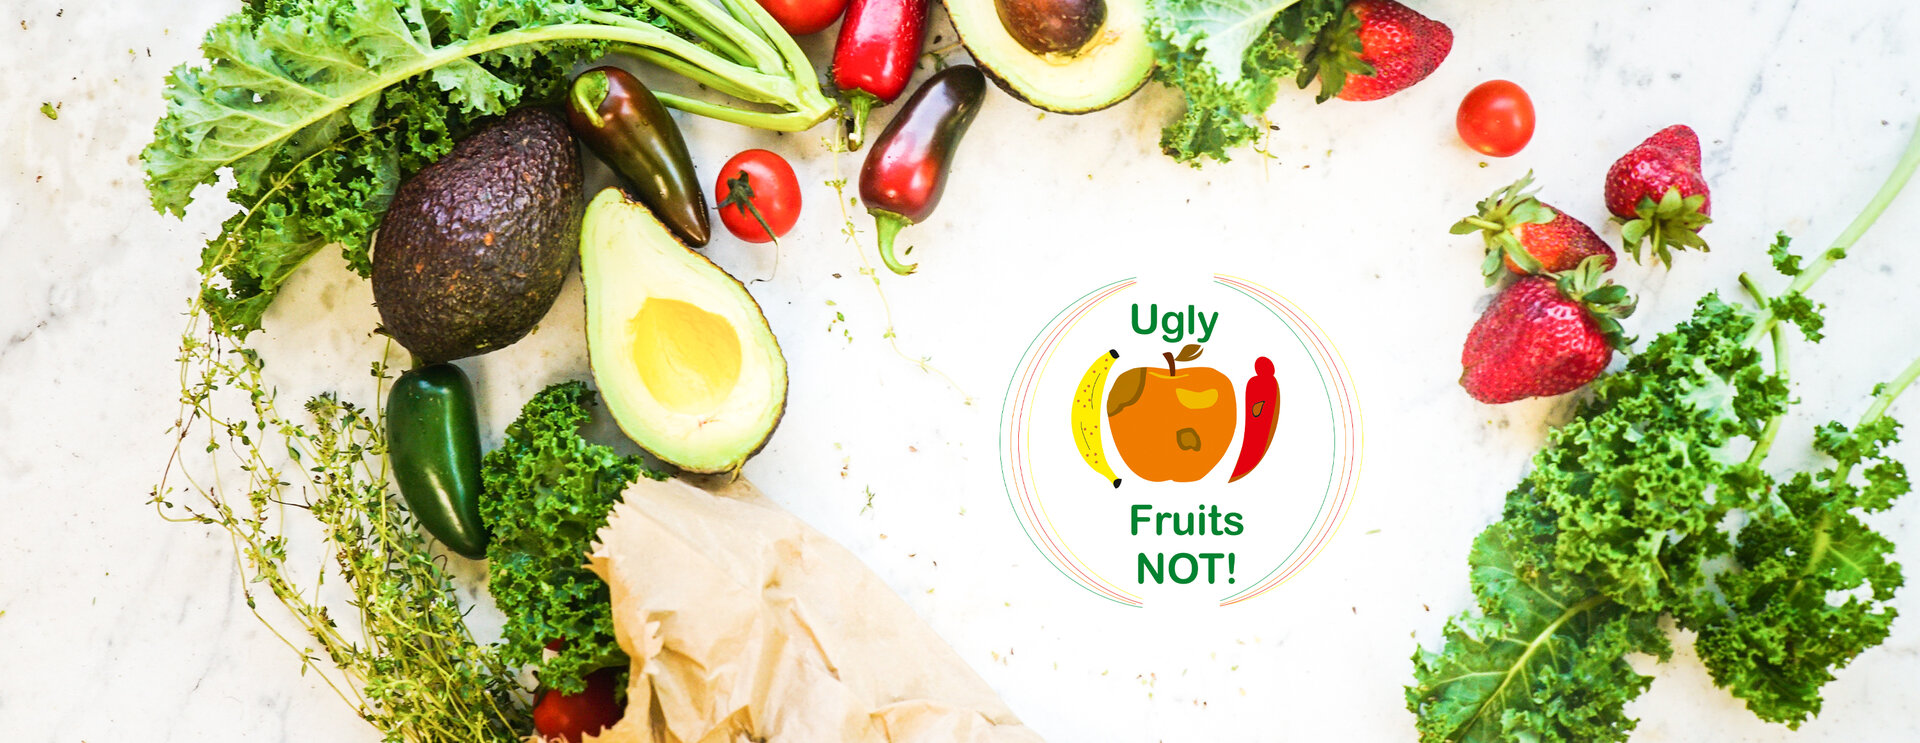 Φωτογραφία λαχανικών και φρούτων. Στη μέση της φωτογραφίας είναι το λογότυπο του έργου, το οποίο δείχνει την υποτέλεια φρούτα και λαχανικά και τις λέξεις 